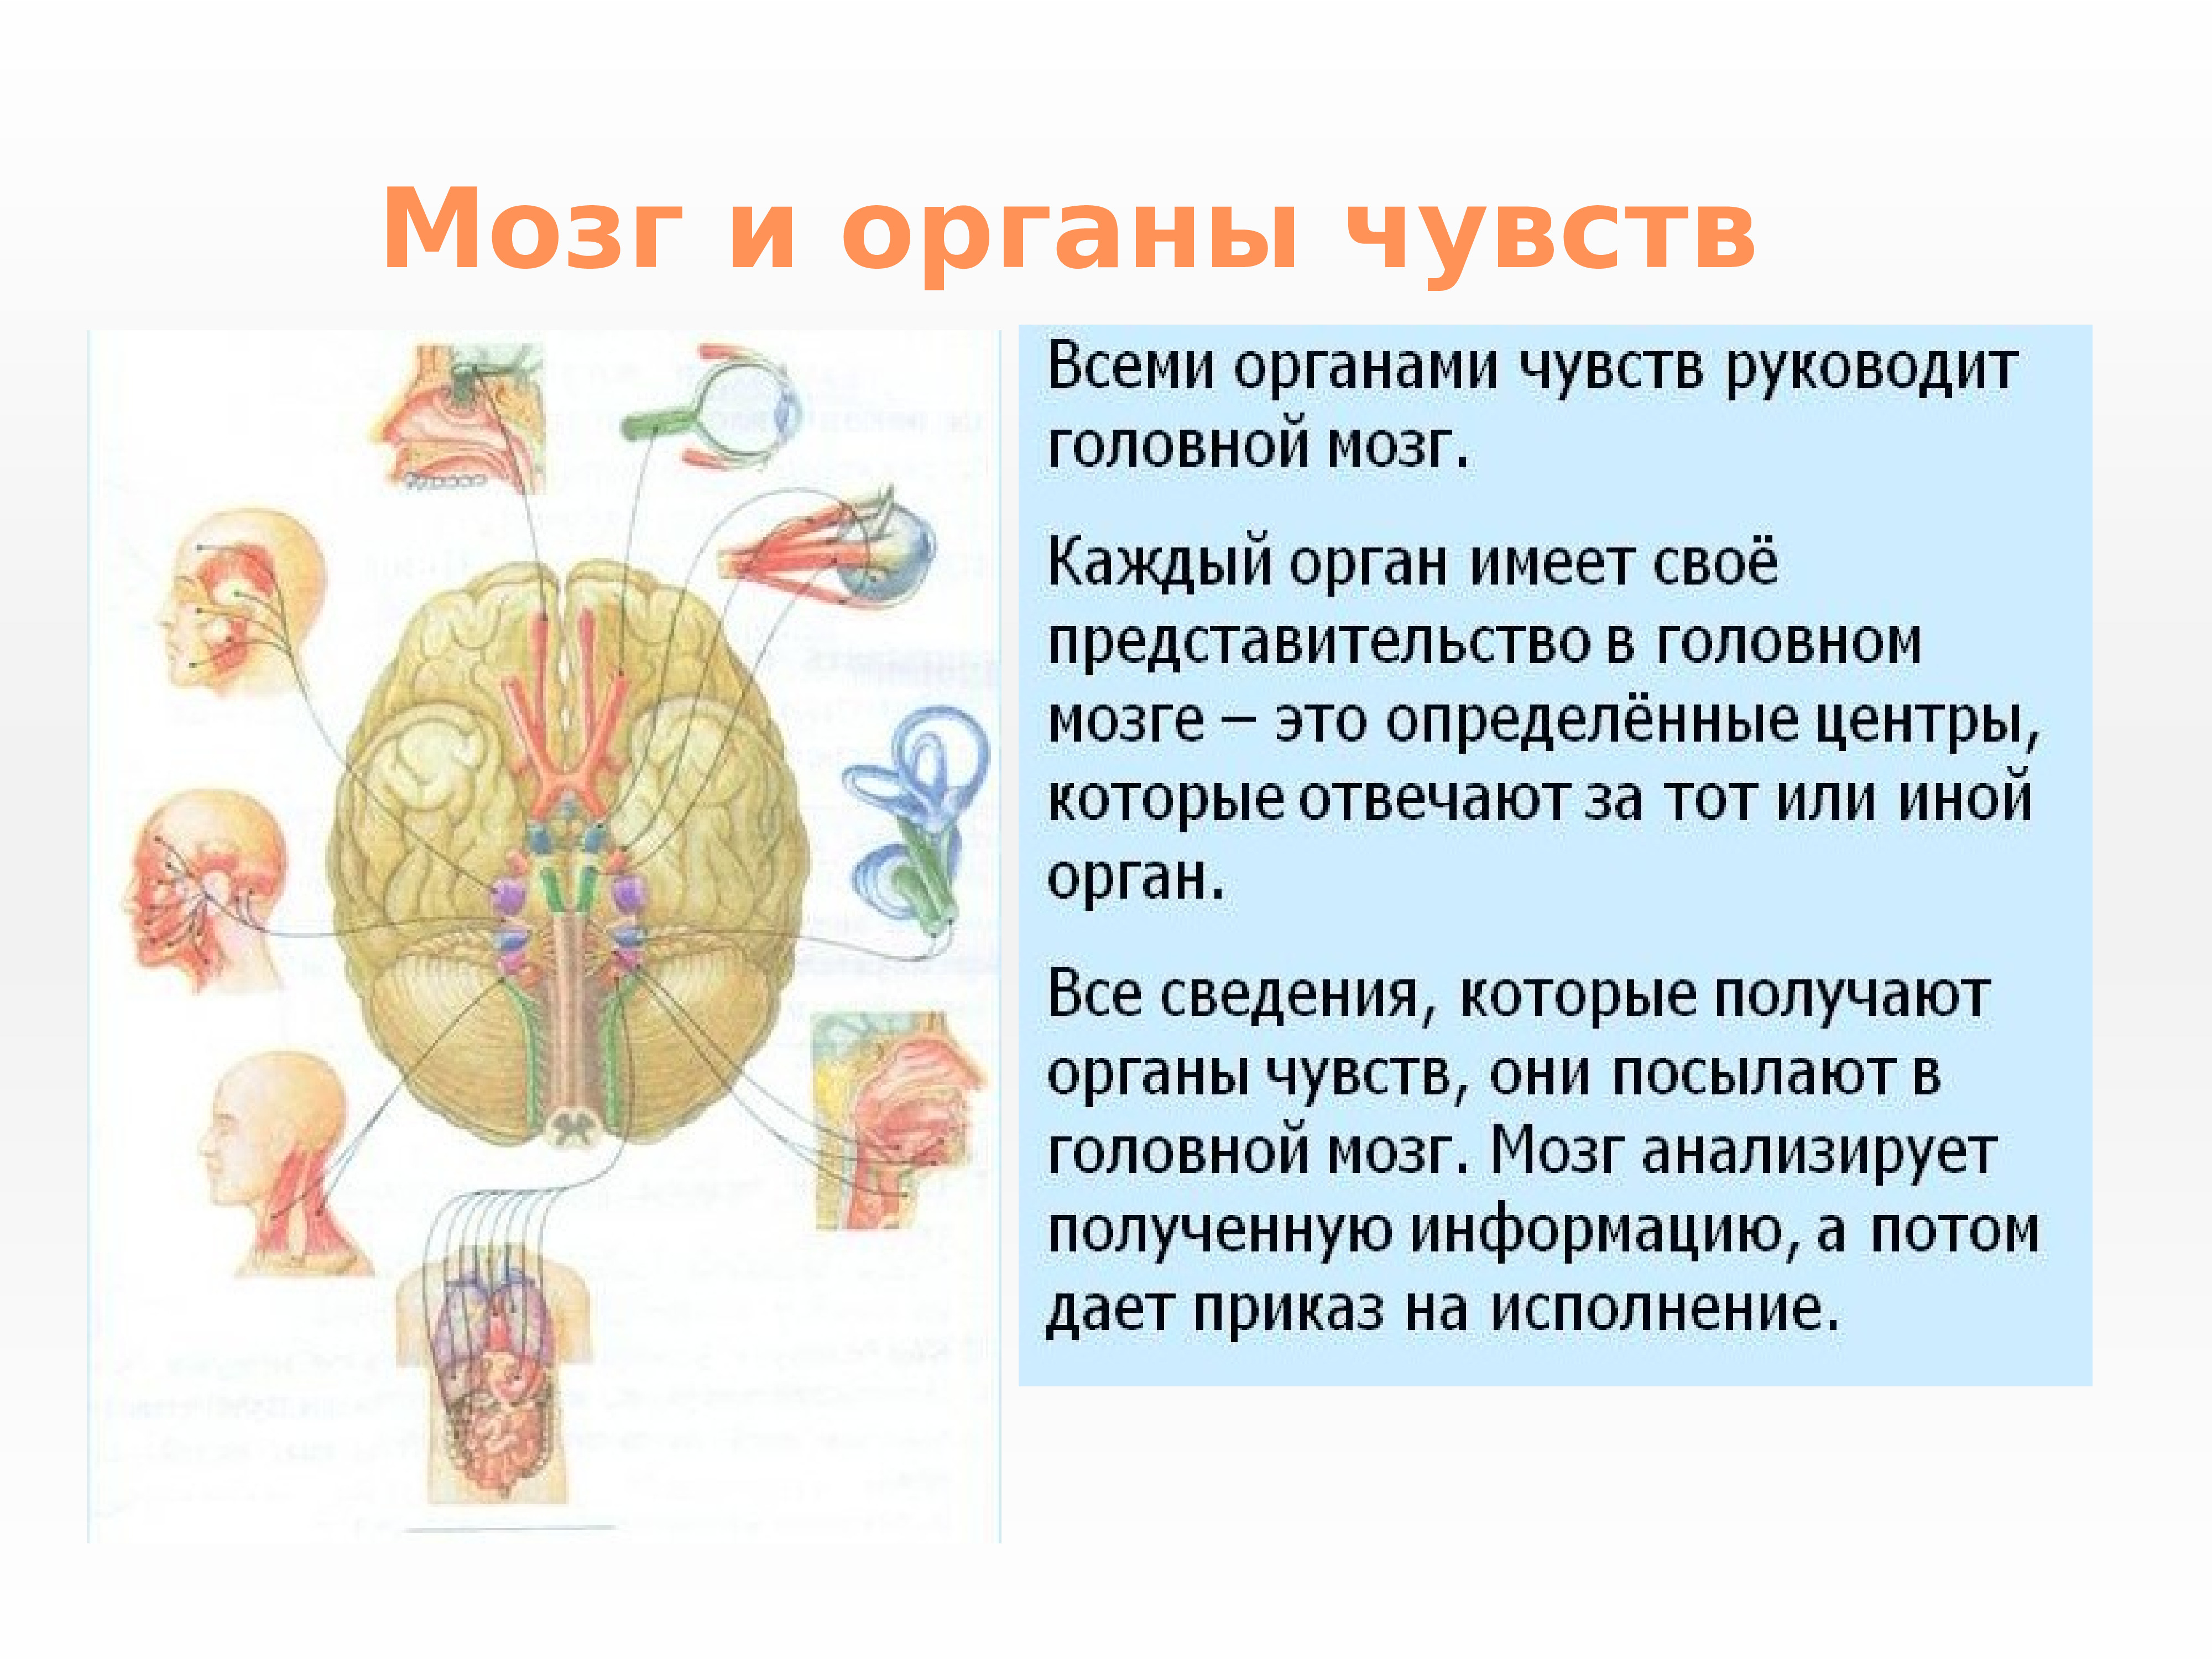 Заболевания органов чувств. Нервная система и органы чувств система человека. Нервная система структура организма. Строение и функции органов нервной системы. Нервная система и органы чувств строение функция.